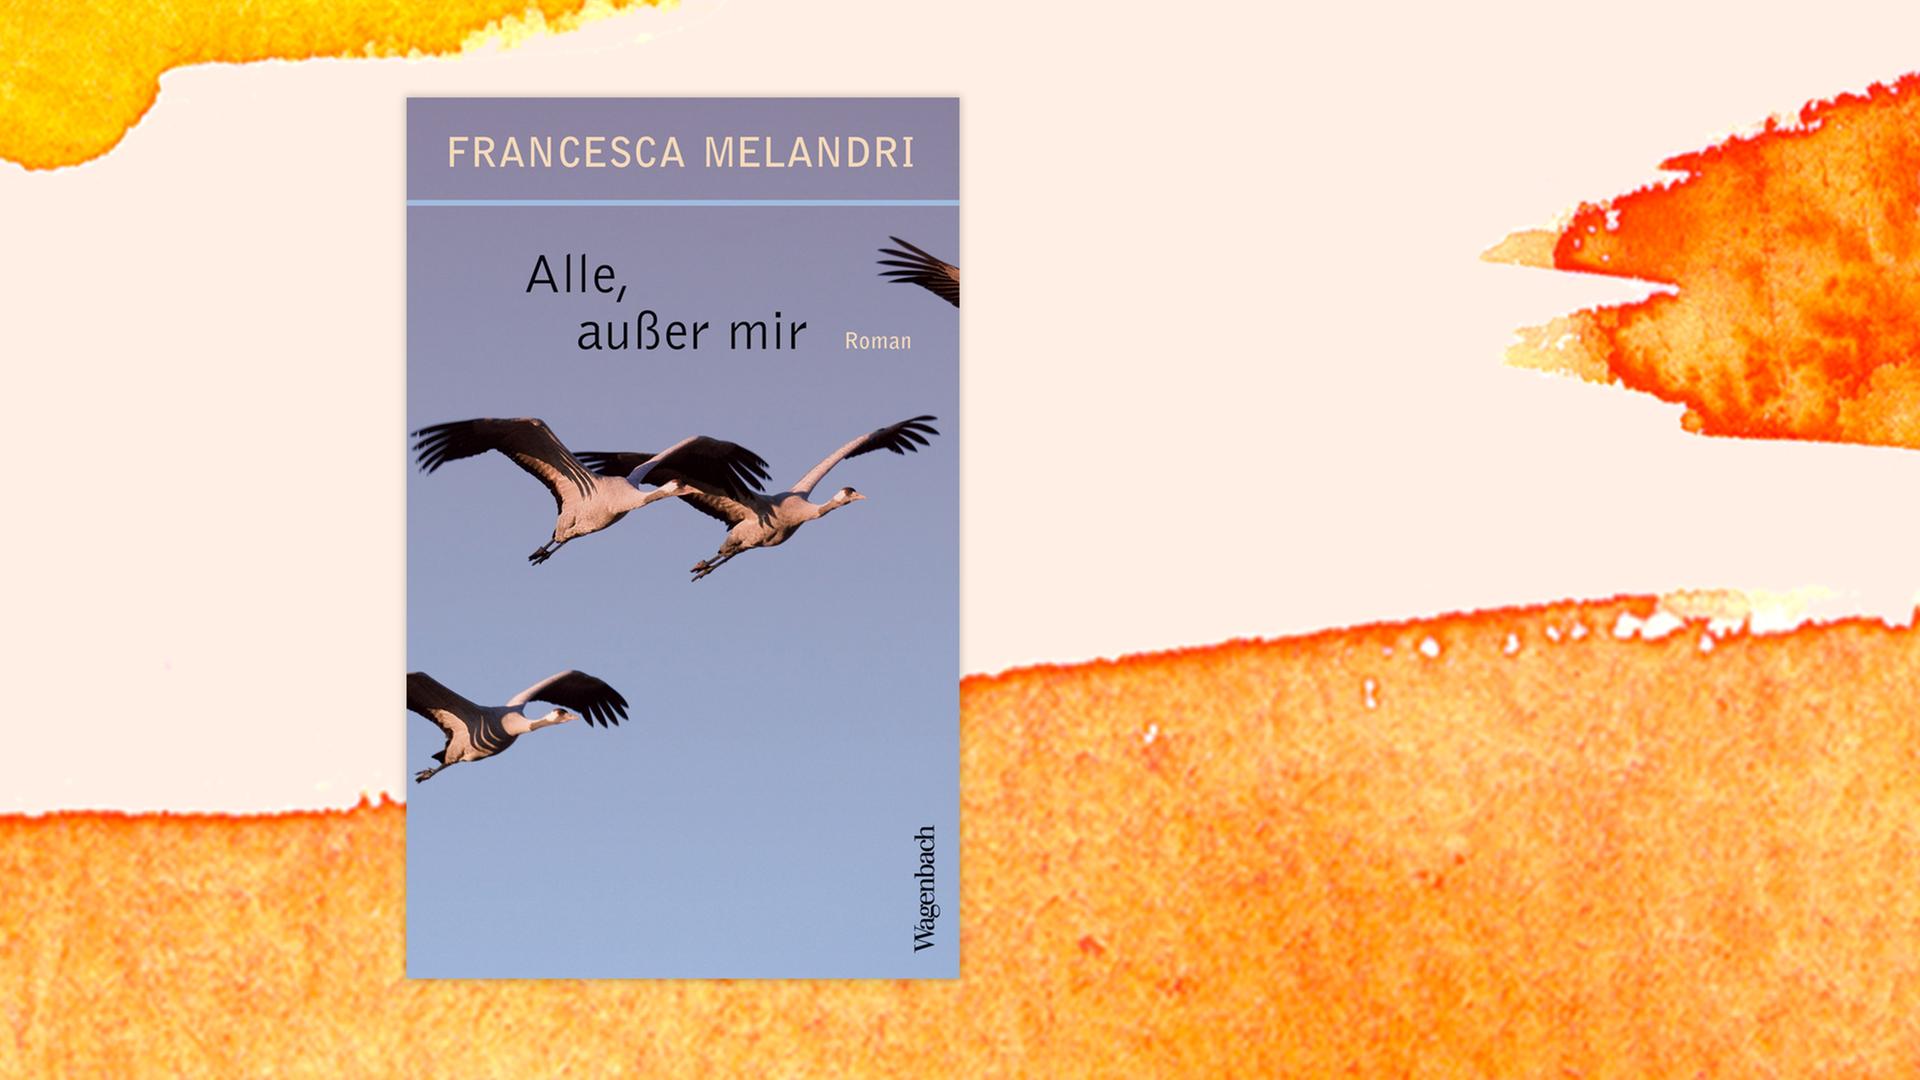 Cover von Francesca Melandri: "Alle, außer mir" vor aquarelliertem Hintergrund